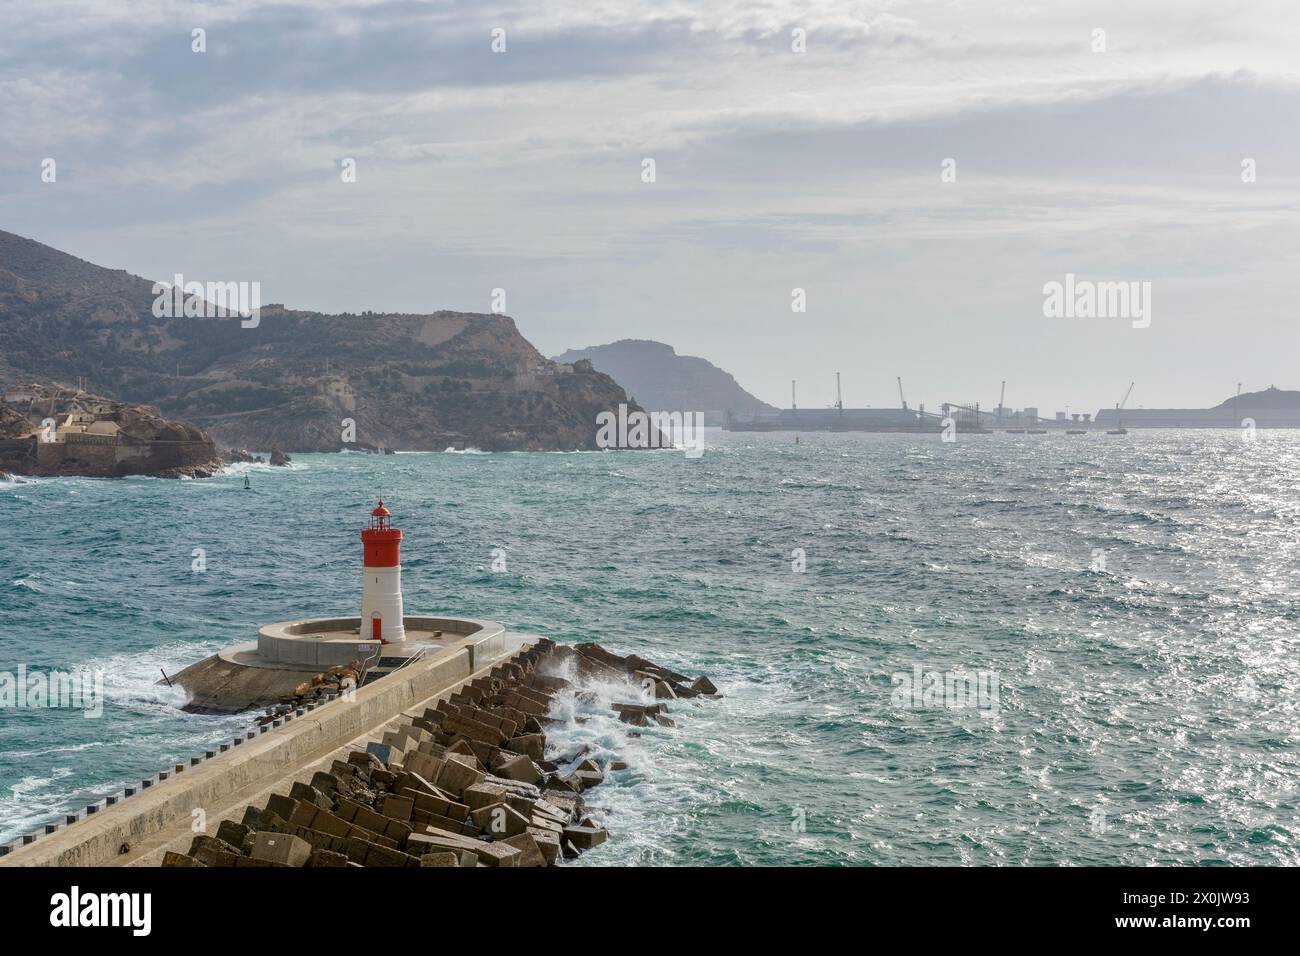 Il faro rosso della banchina di Natale sul frangiflutti per la difesa contro il vento sud-est della baia nel porto di Cartagena, Spagna, Europa Foto Stock